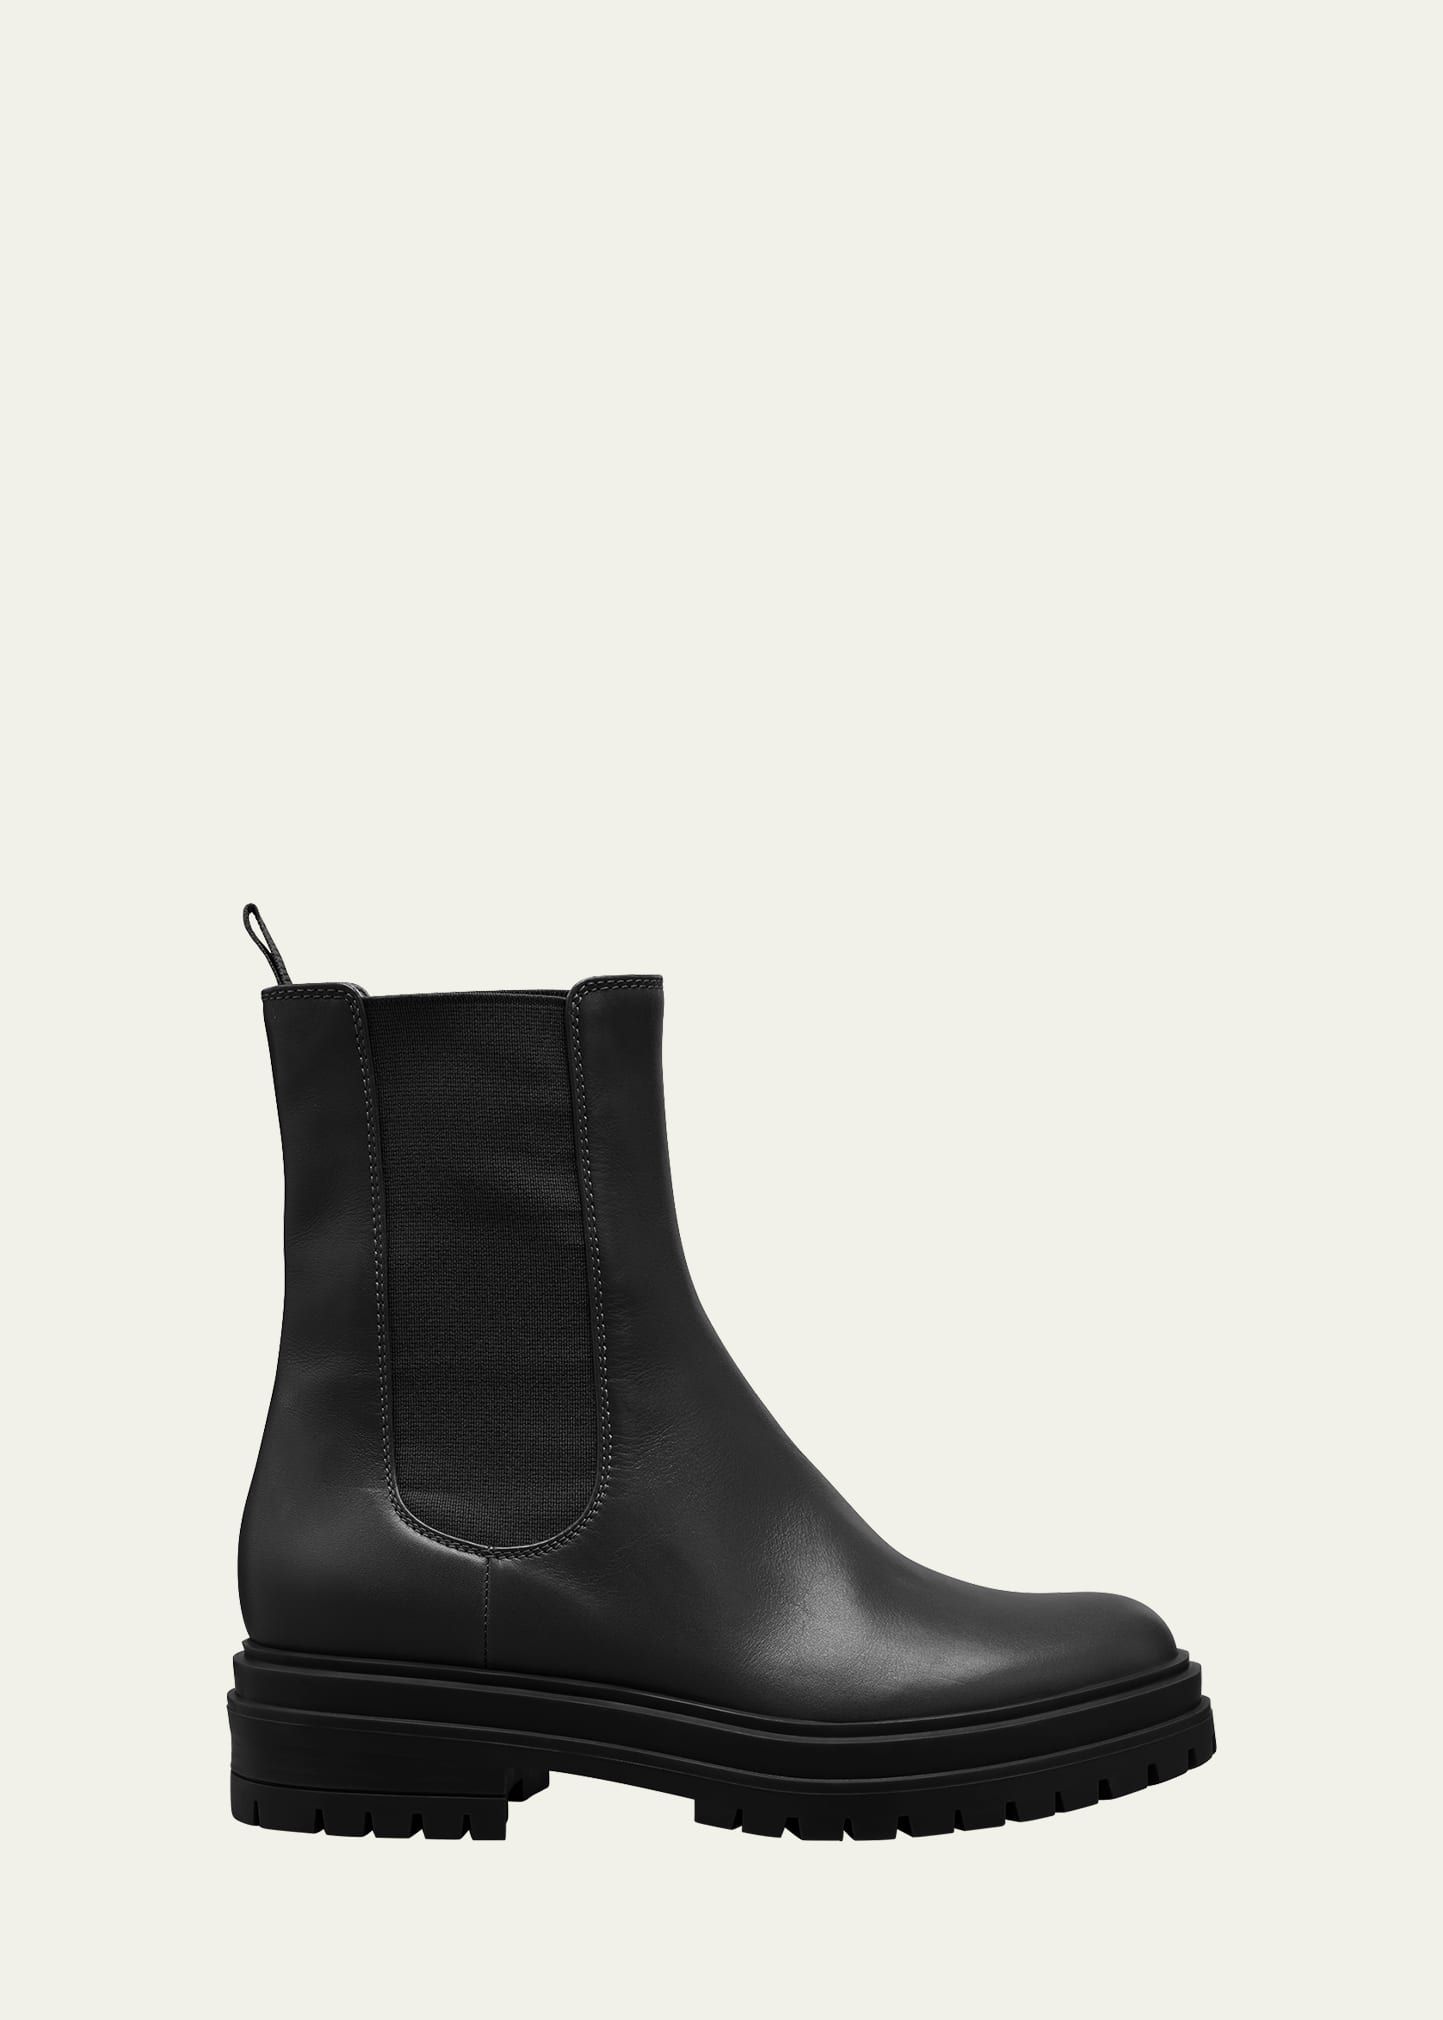 Gianvito Rossi Lug-Sole Chelsea Boots | Bergdorf Goodman